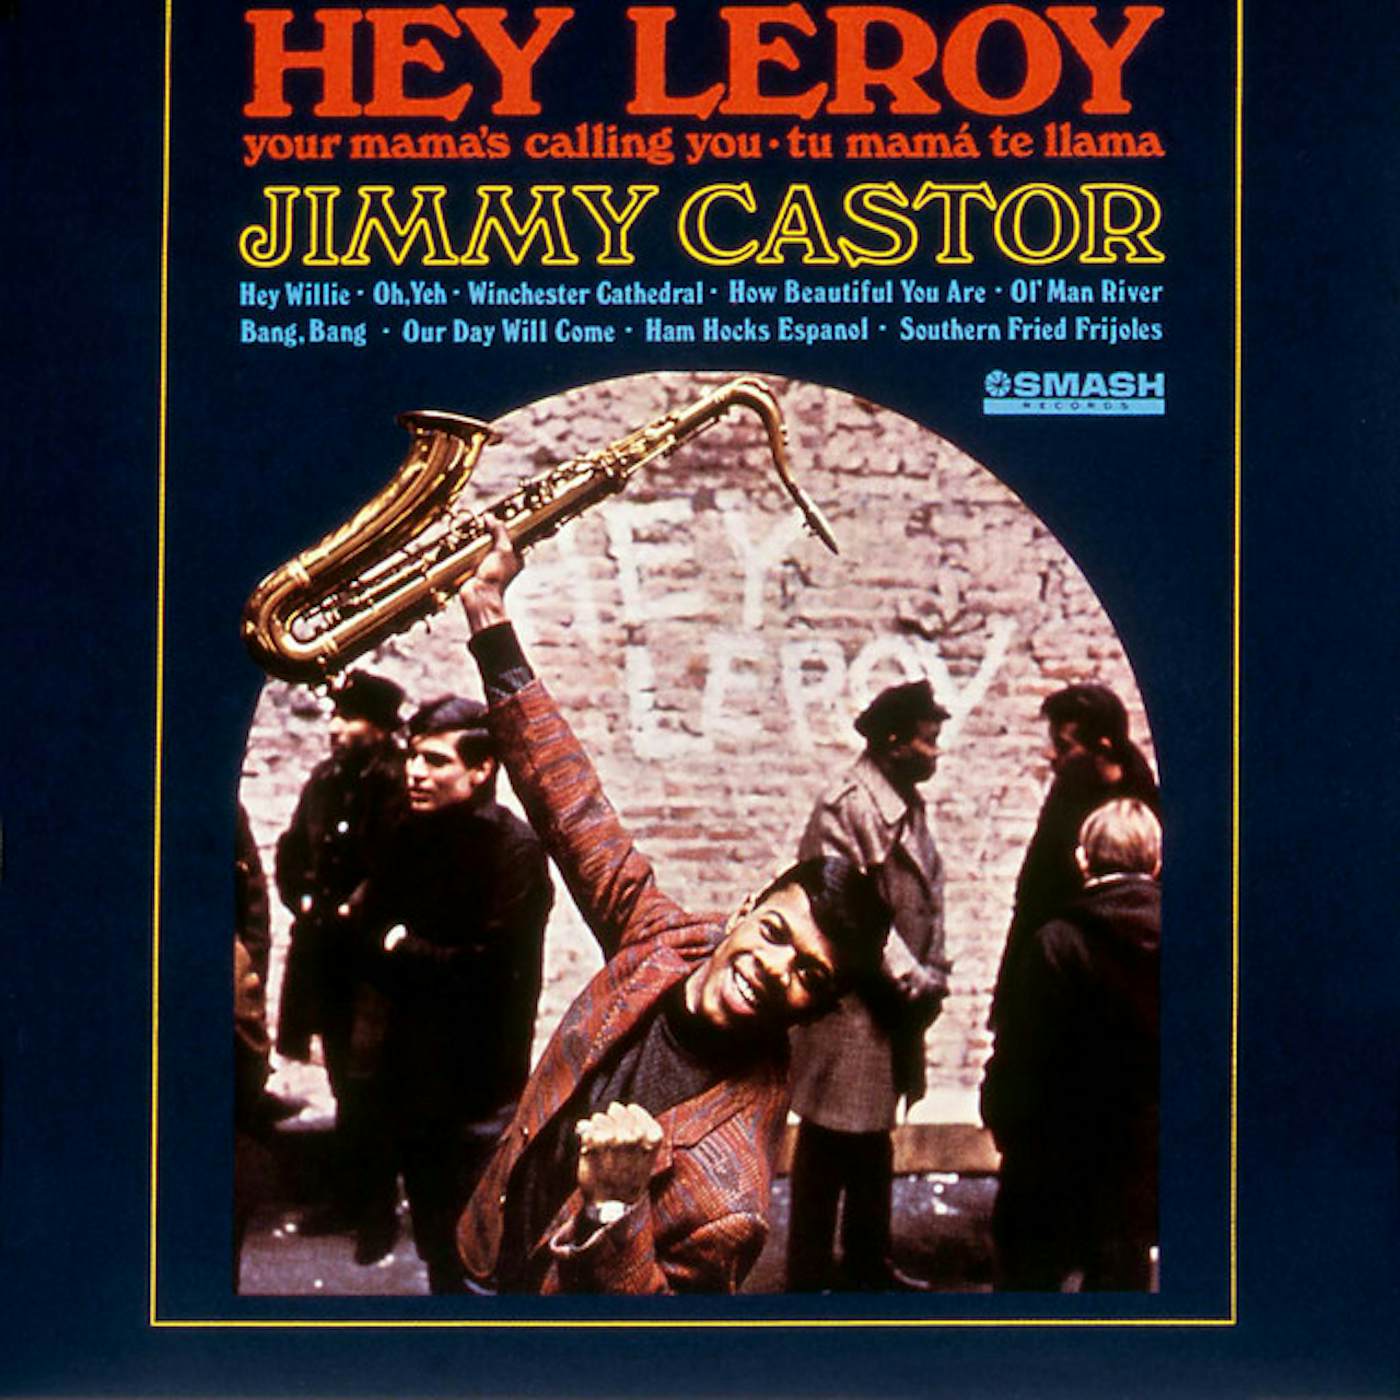 Jimmy Castor HEY LEROY CD